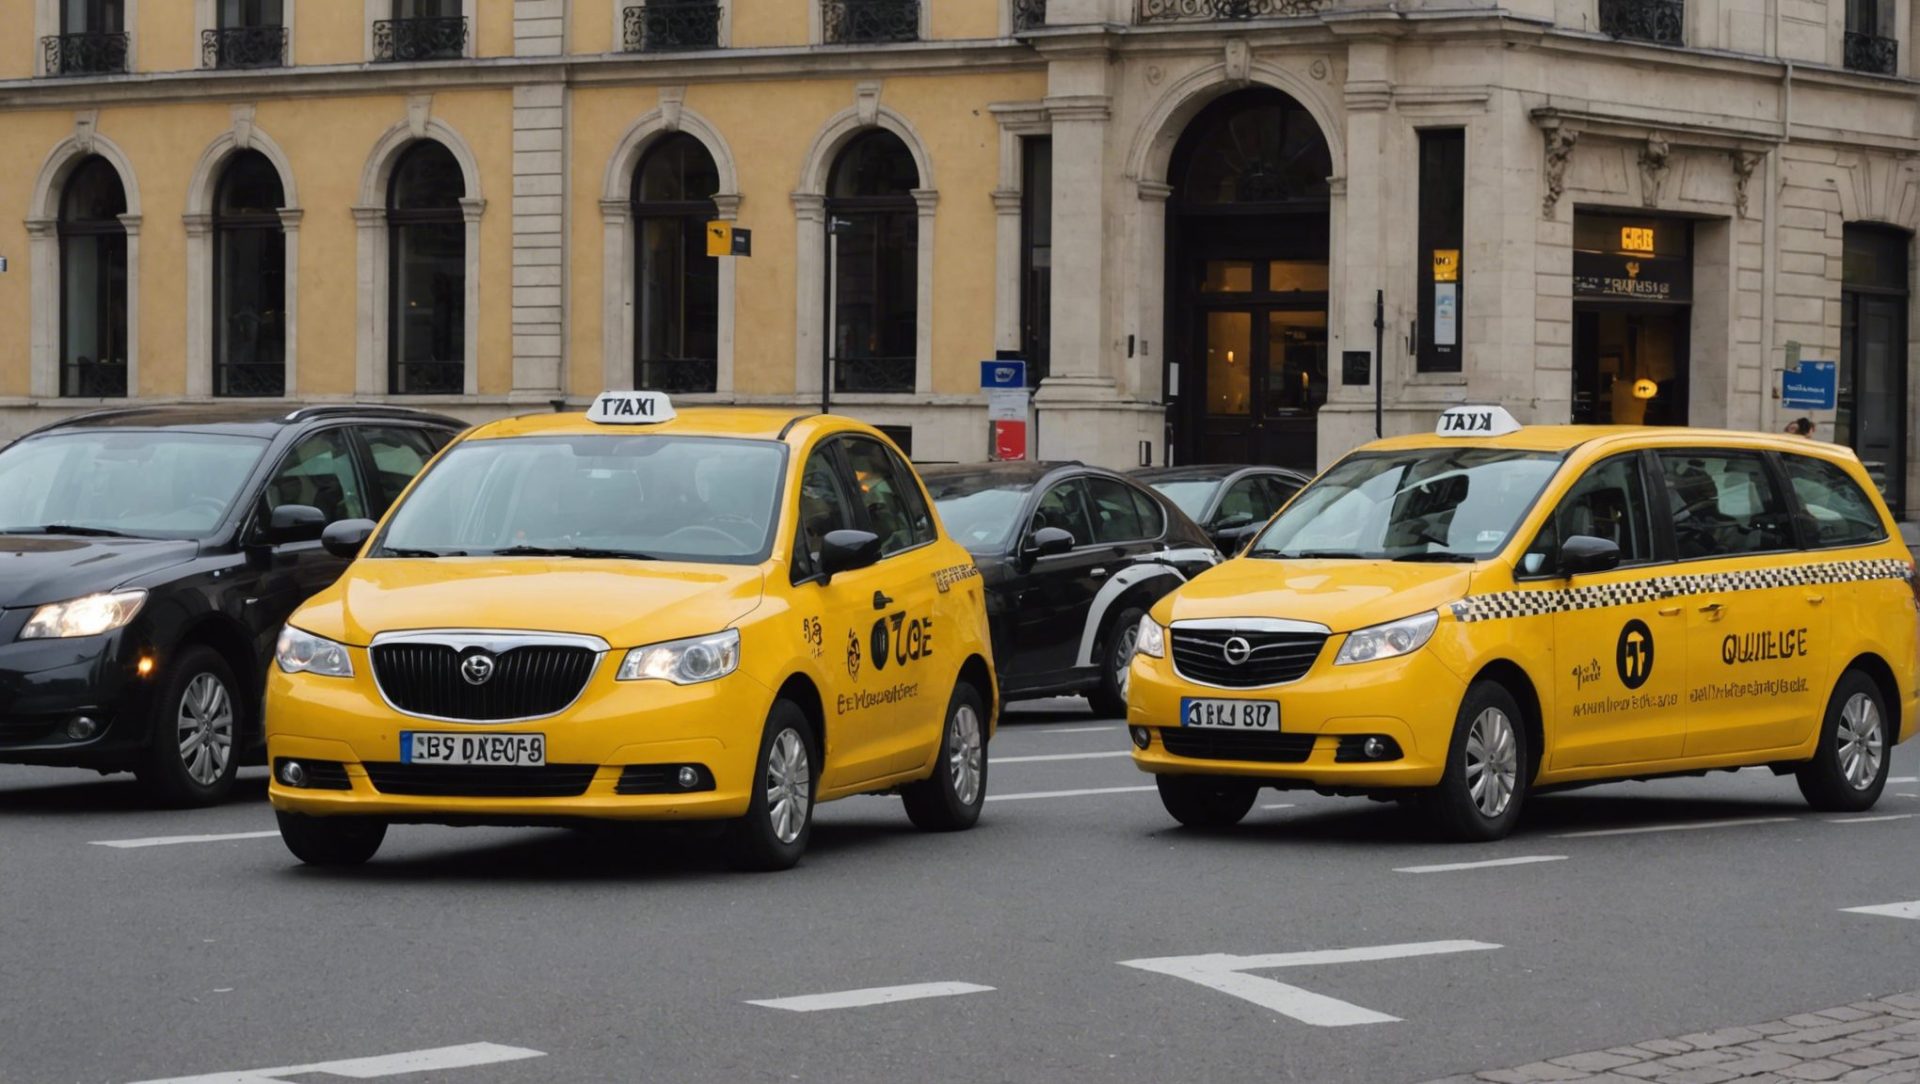 découvrez le prix d'un taxi à liège et obtenez des informations utiles pour vos déplacements avec notre guide complet. conseils, tarifs et services : tout ce que vous devez savoir sur les taxis à liège.